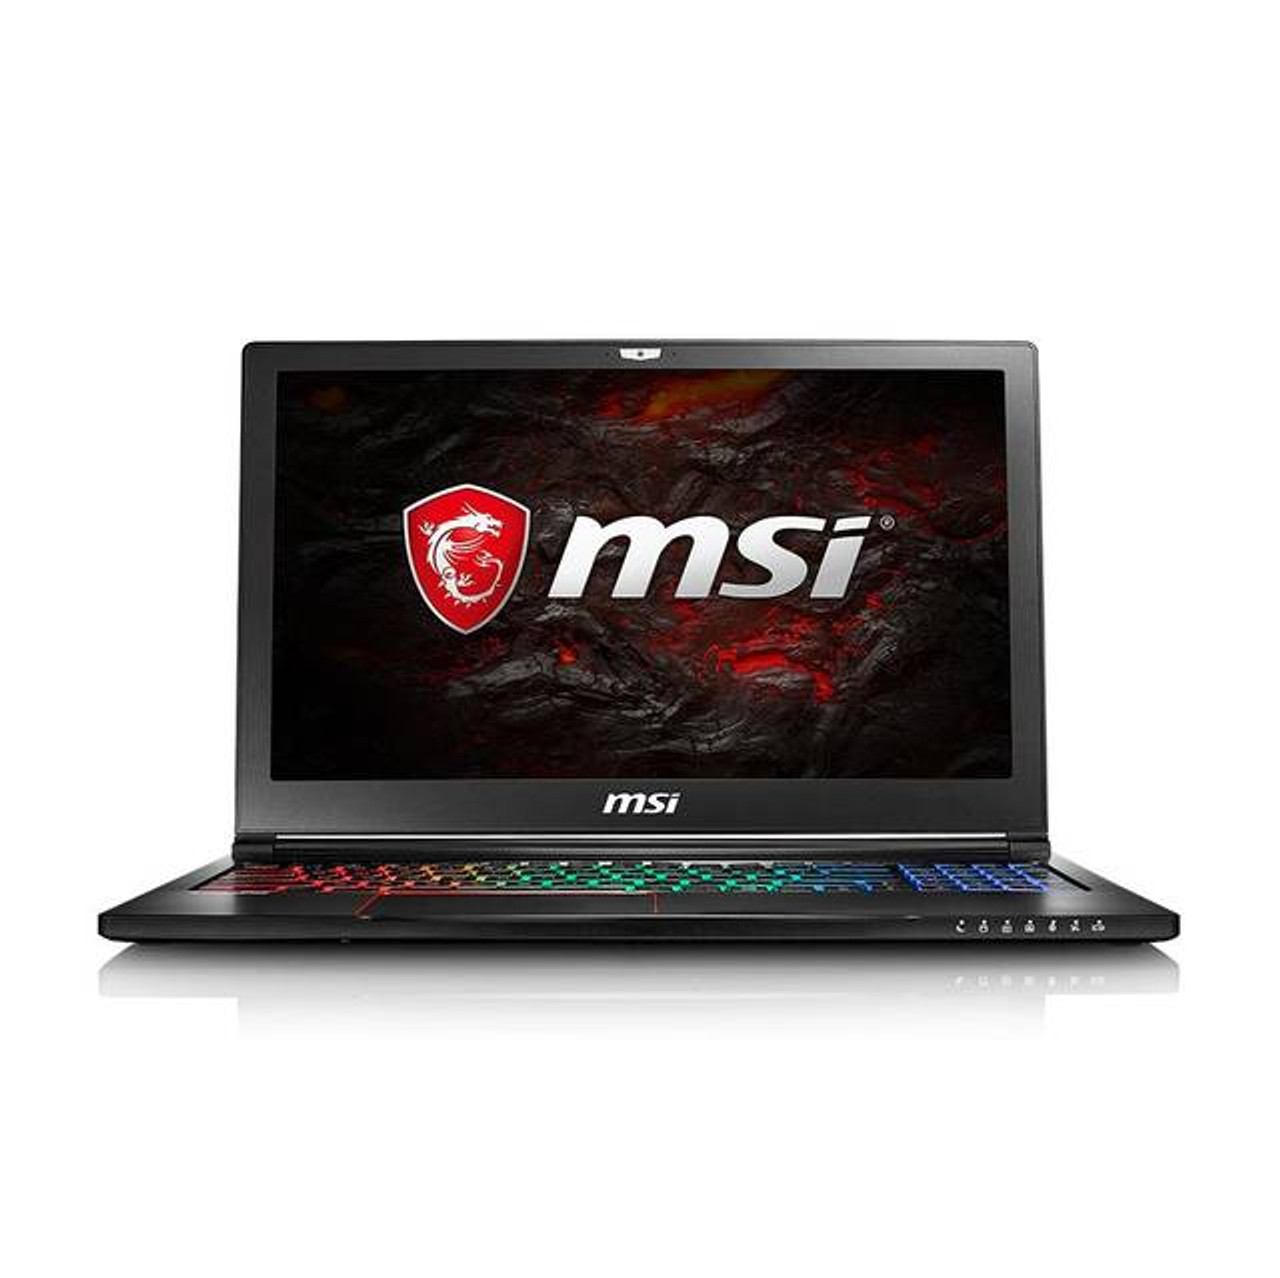 MSI GS63VR STEALTH PRO-002 15.6 inch Intel Core i7-7700HQ 2.8GHz/ 32GB DDR4/ 1TB HDD + 512GB SSD/ GTX 1070/ USB3.0/ Windows 10 Pro Ultrabook (Aluminum Black)